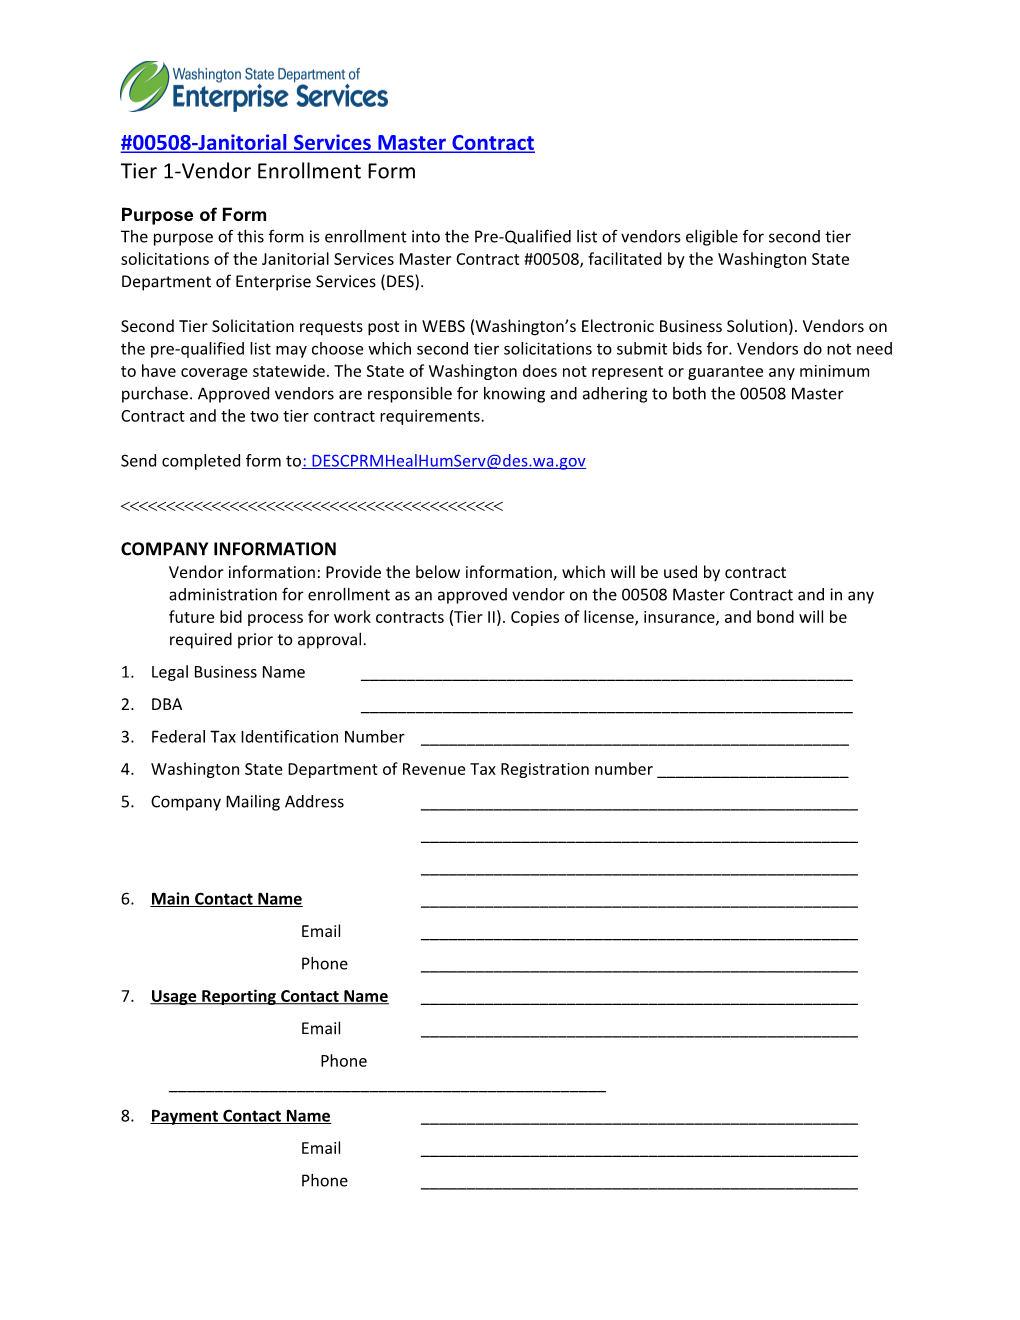 Janitorial Master Contract Vendor Enrollment Form